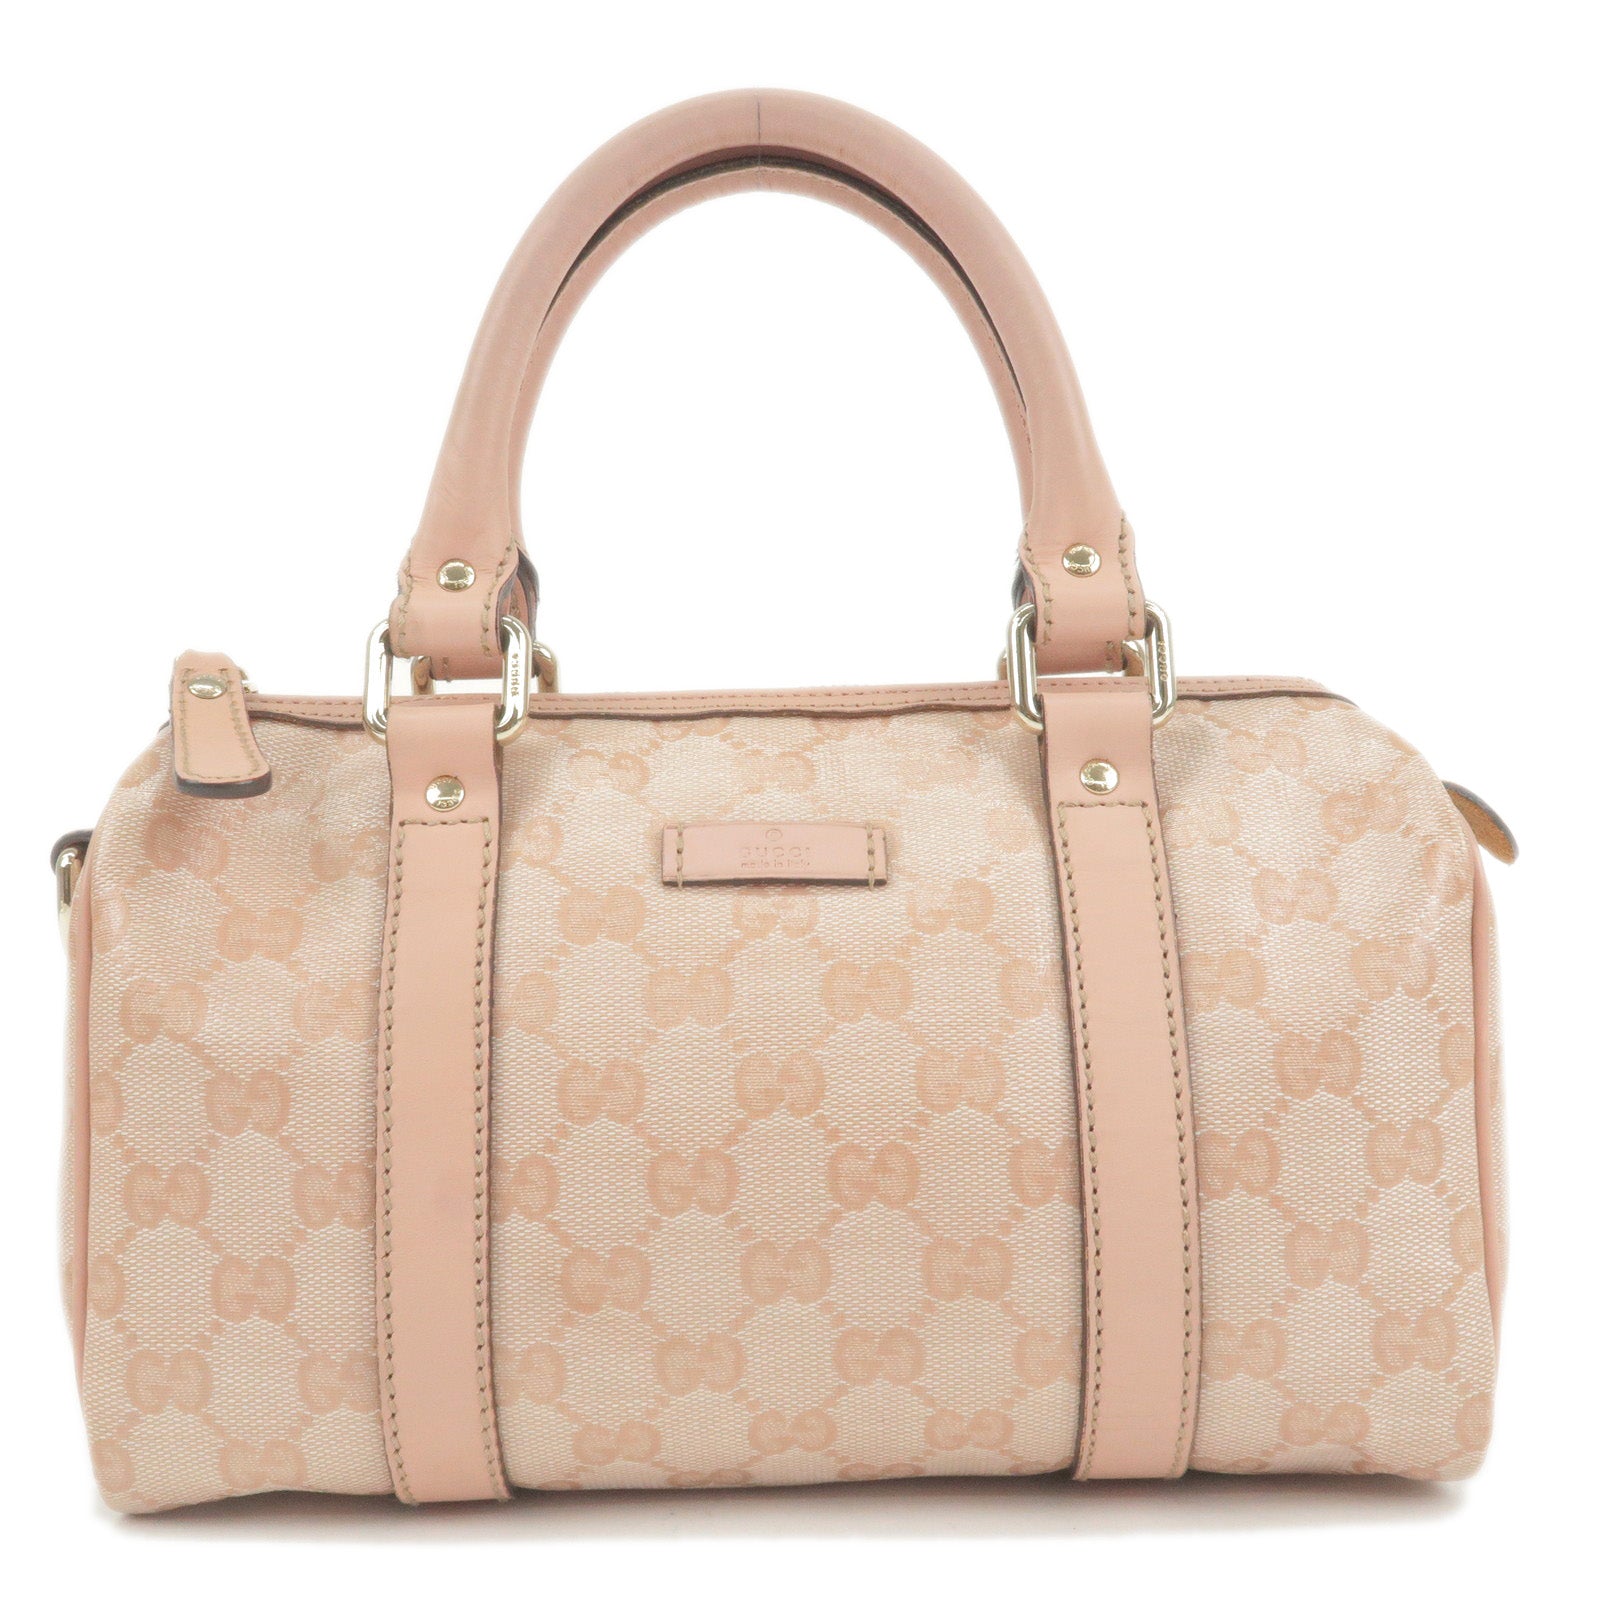 GUCCI-GG-Crystal-Leather-Boston-Bag-Hand-Bag-Pink-193604